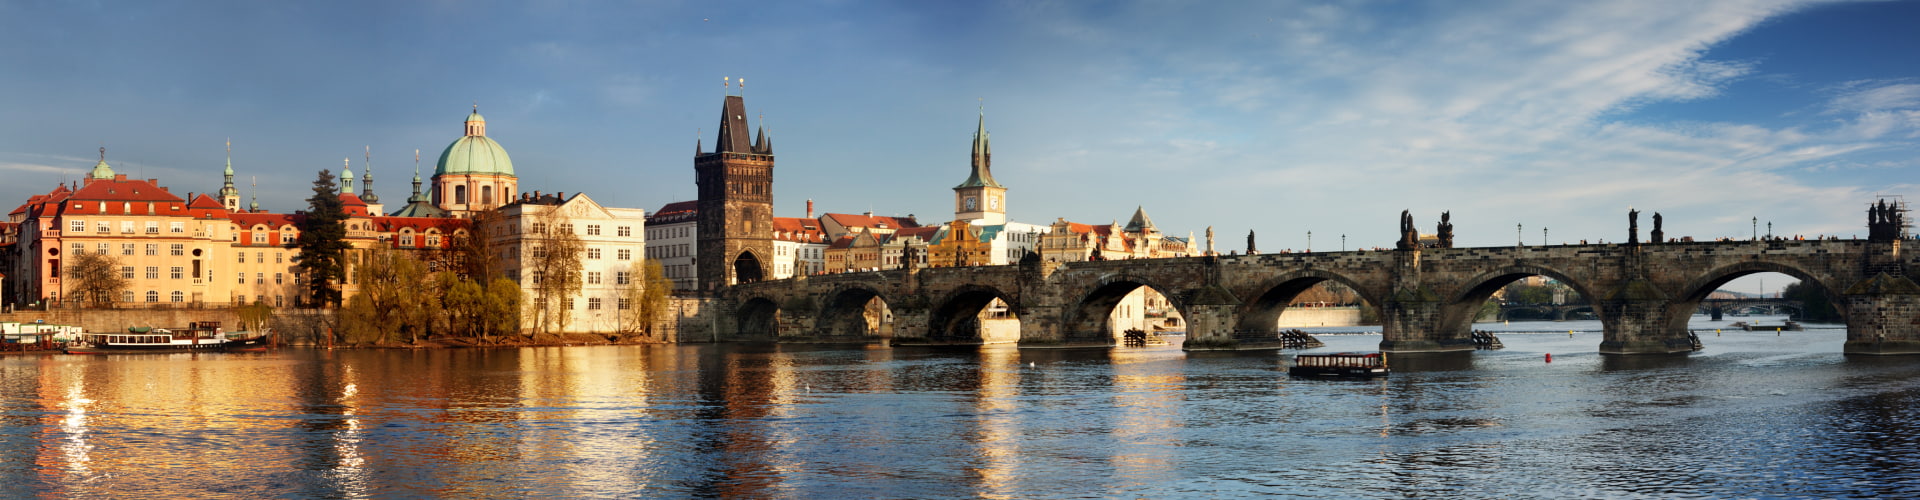 Осенние каникулы в Праге